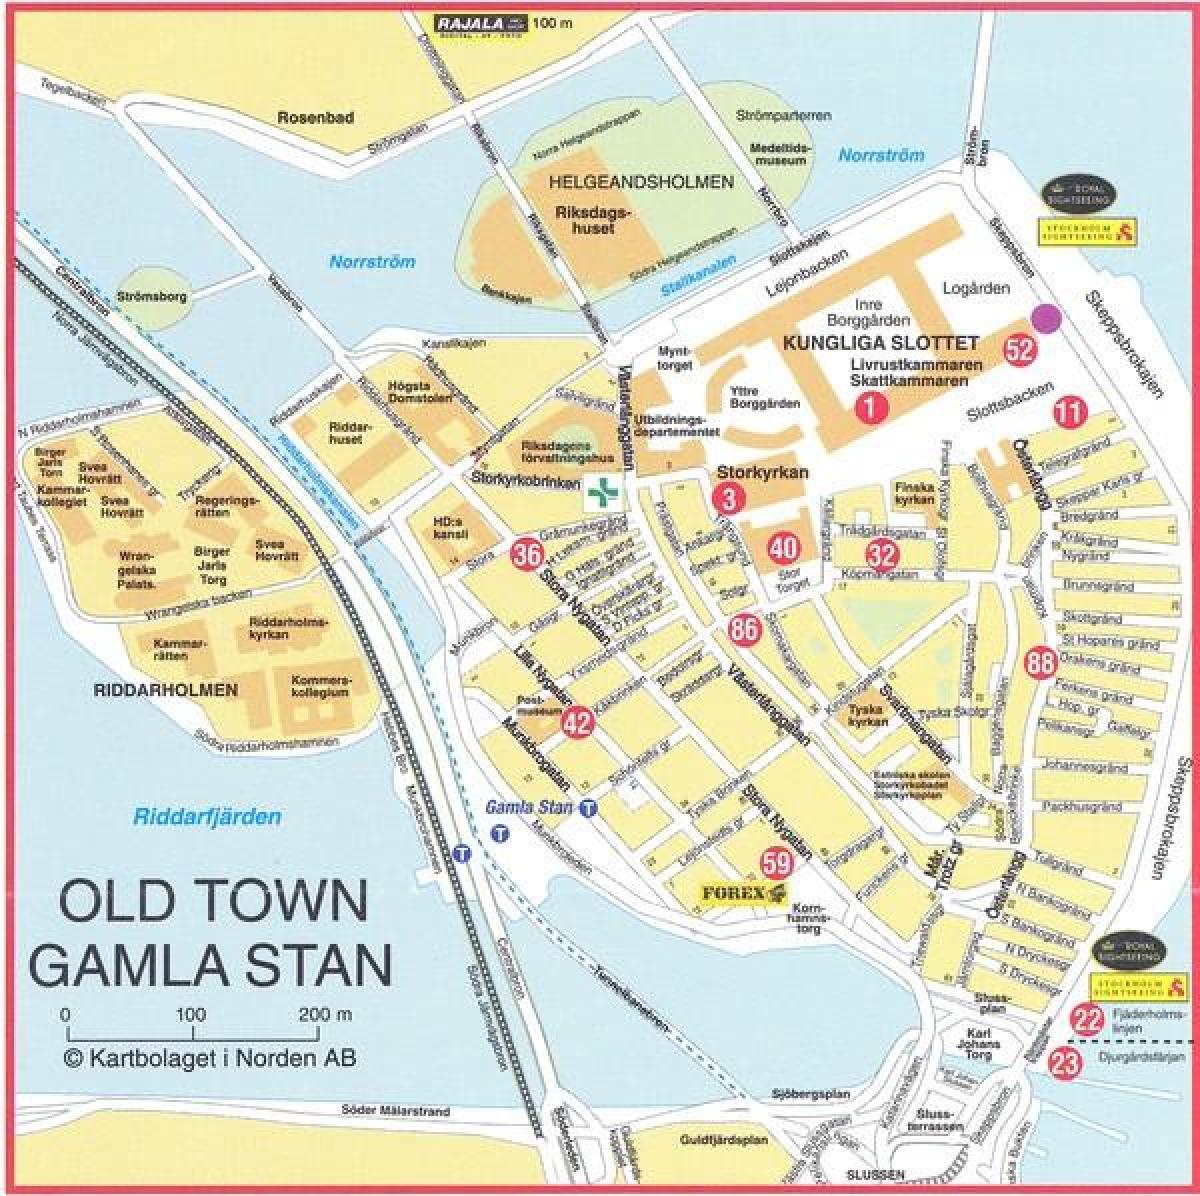 mappa della città vecchia di Stoccolma, in Svezia